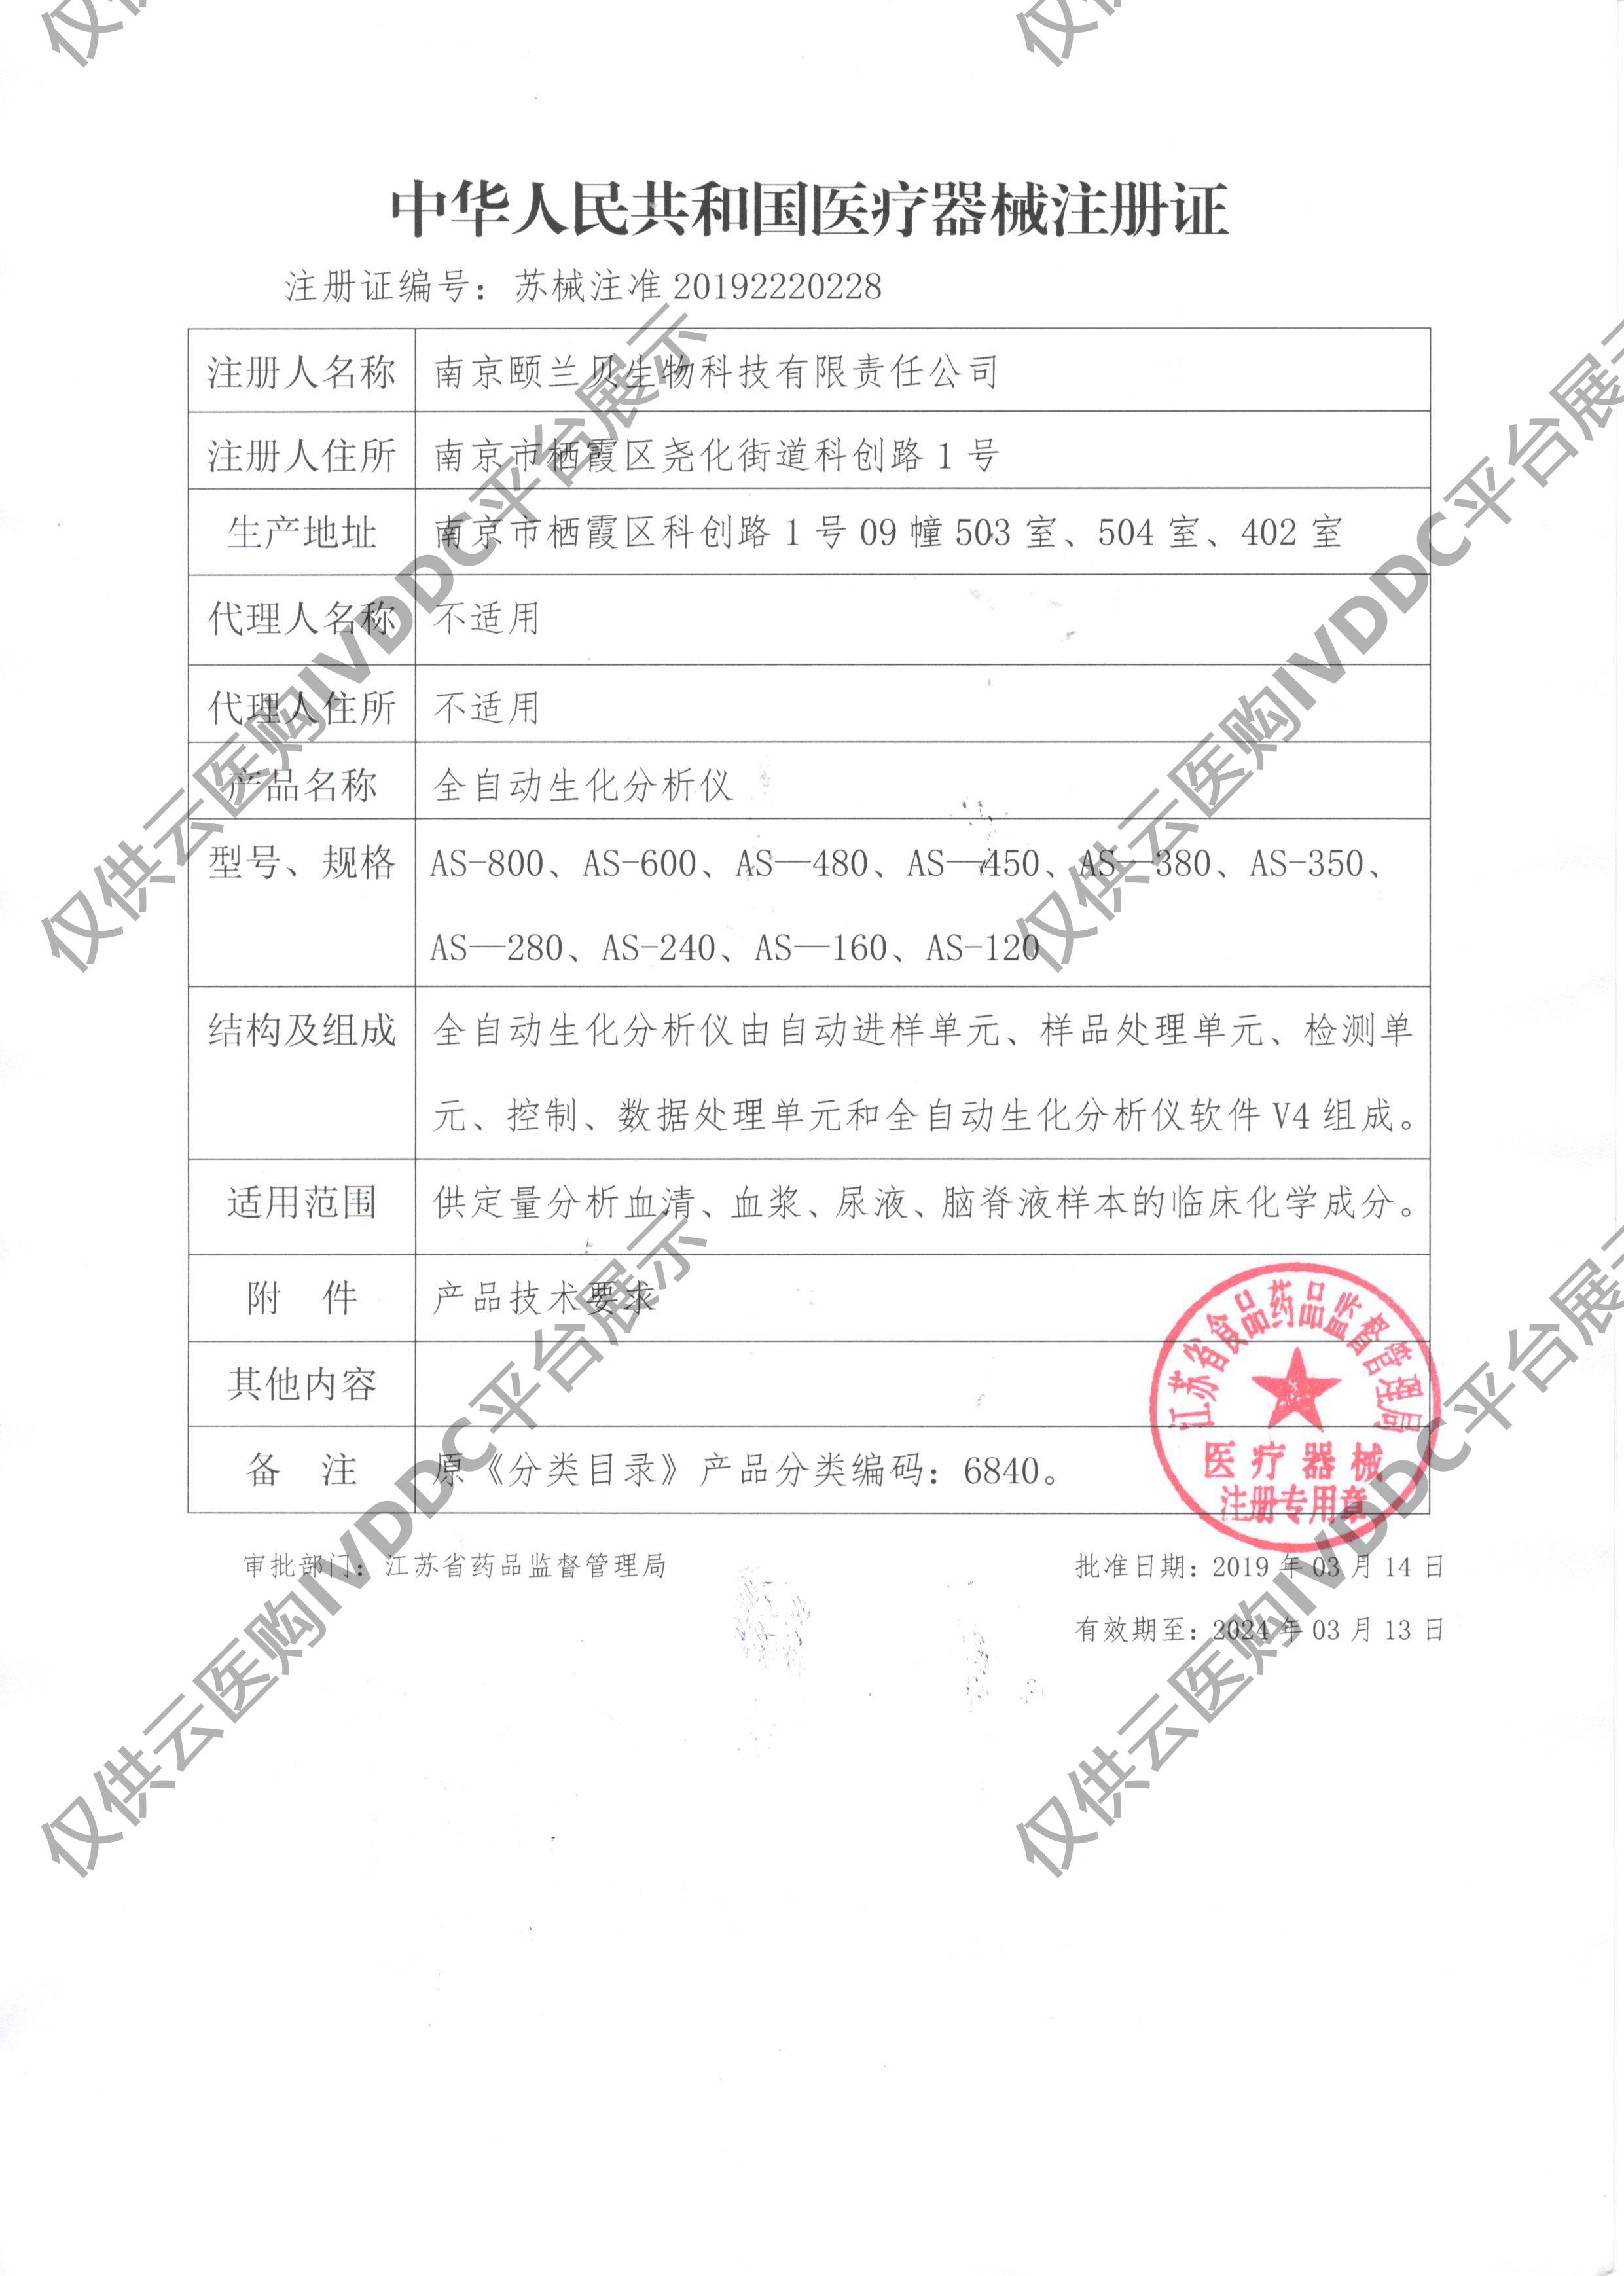 【颐兰贝】全自动生化分析仪 AS-380注册证